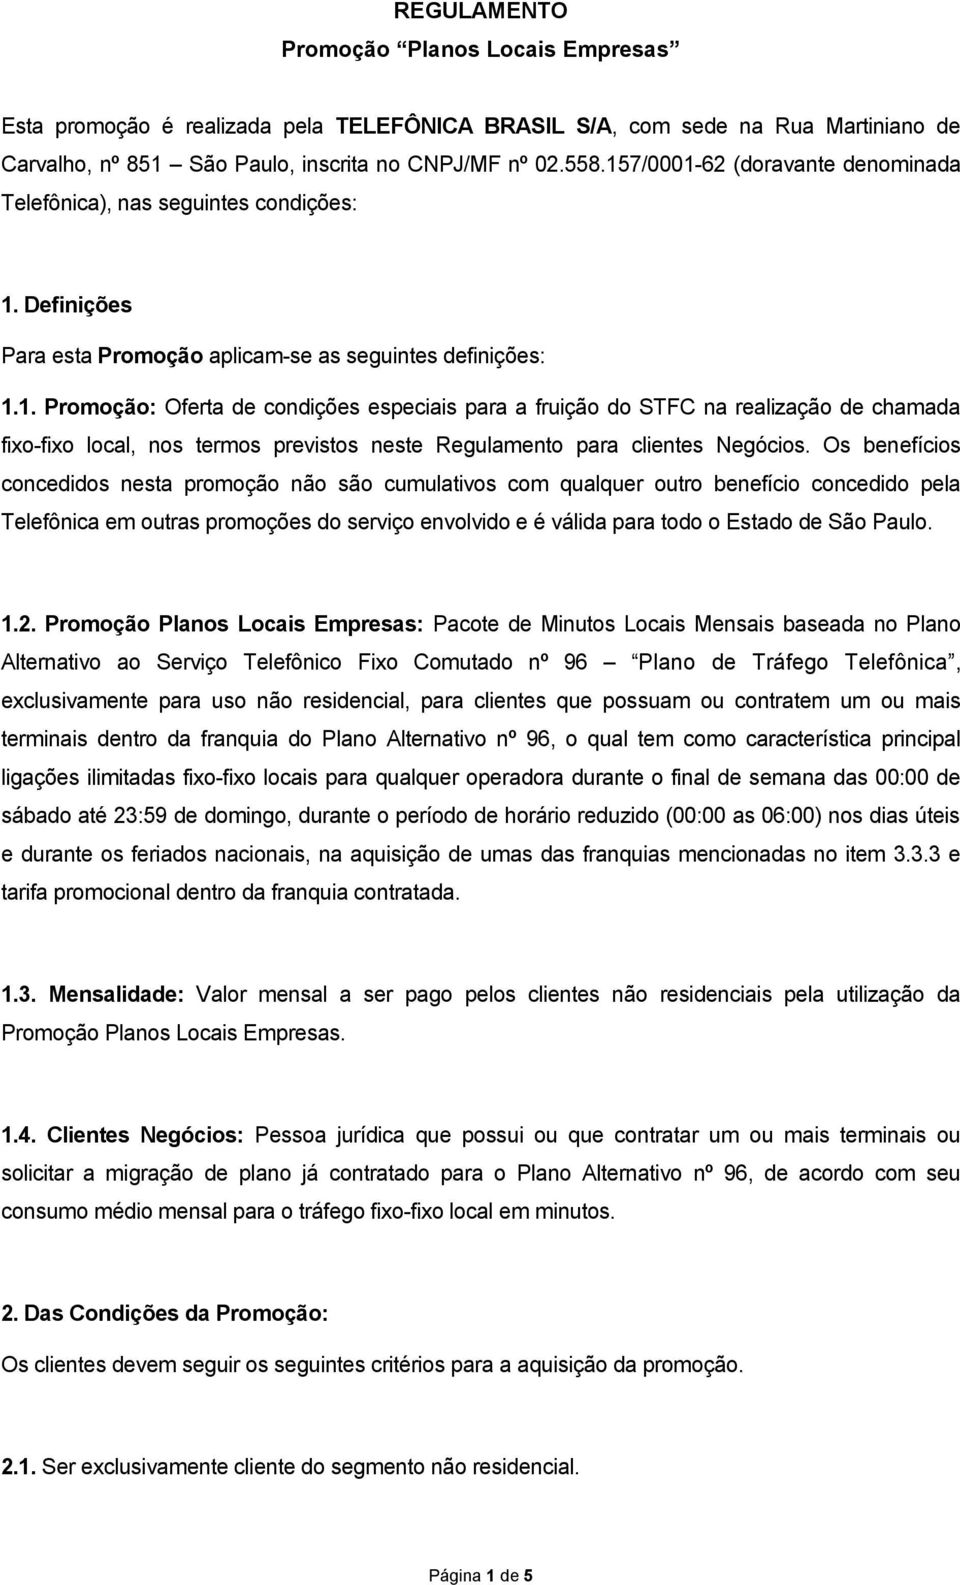 Os benefícios concedidos nesta promoção não são cumulativos com qualquer outro benefício concedido pela Telefônica em outras promoções do serviço envolvido e é válida para todo o Estado de São Paulo.